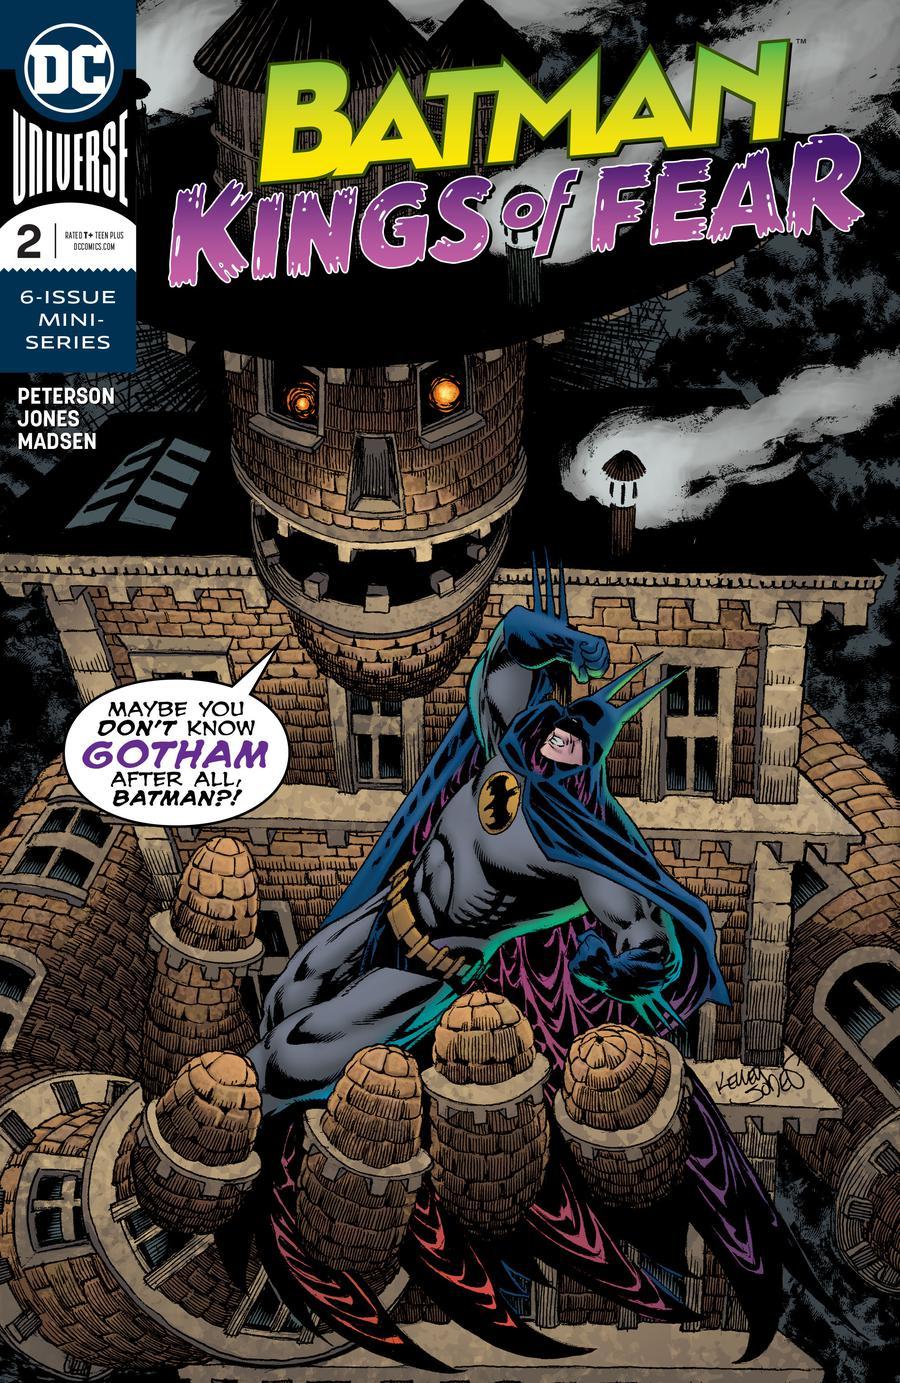 Batman Kings Of Fear Vol. 1 #2